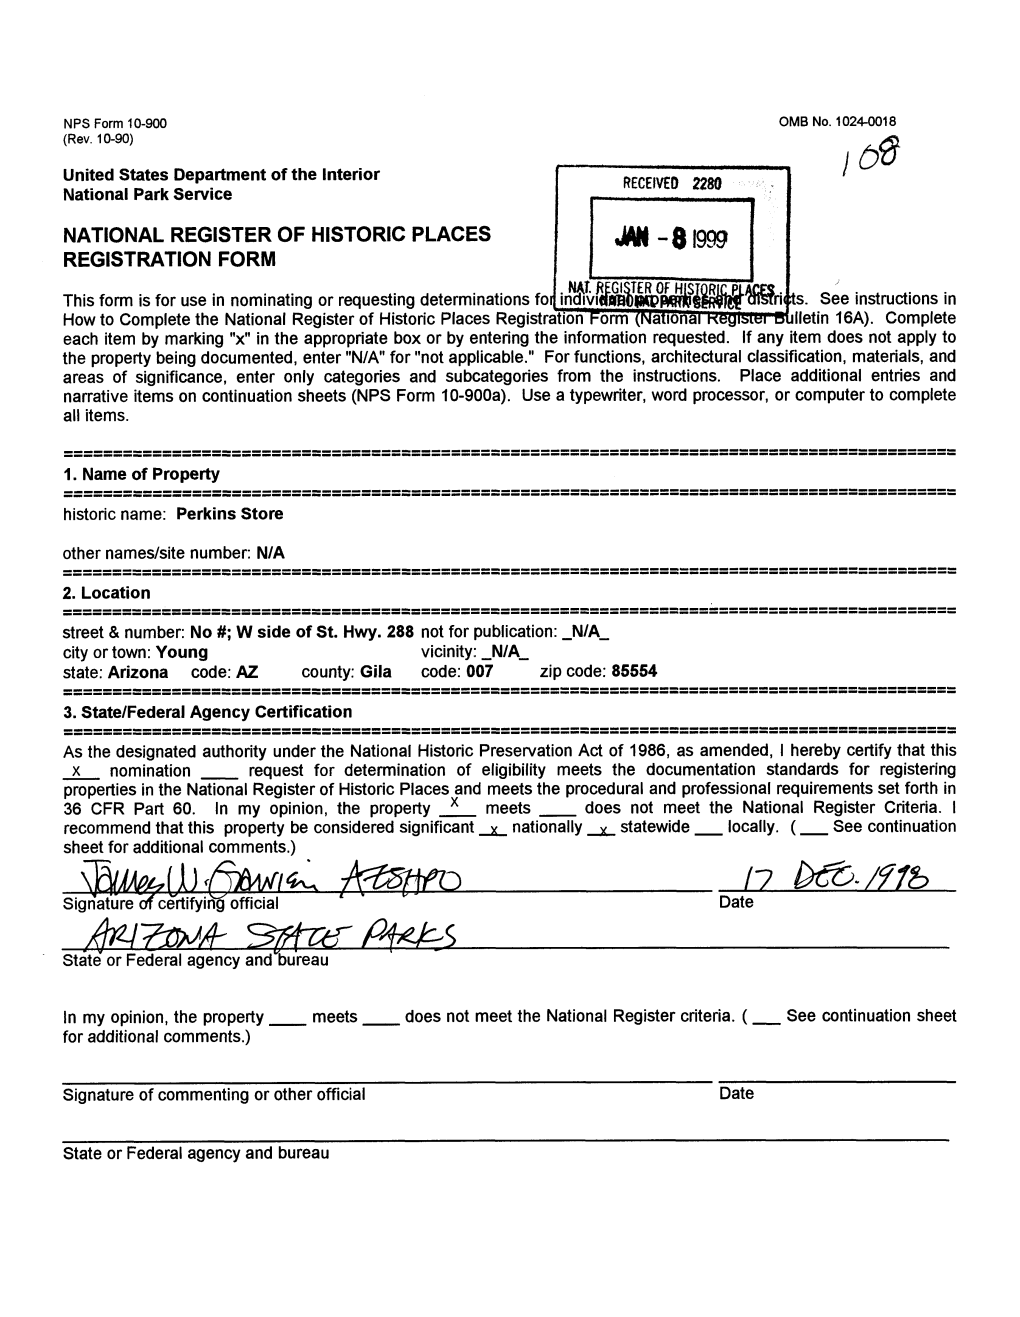 Jw-8I999 Registration Form